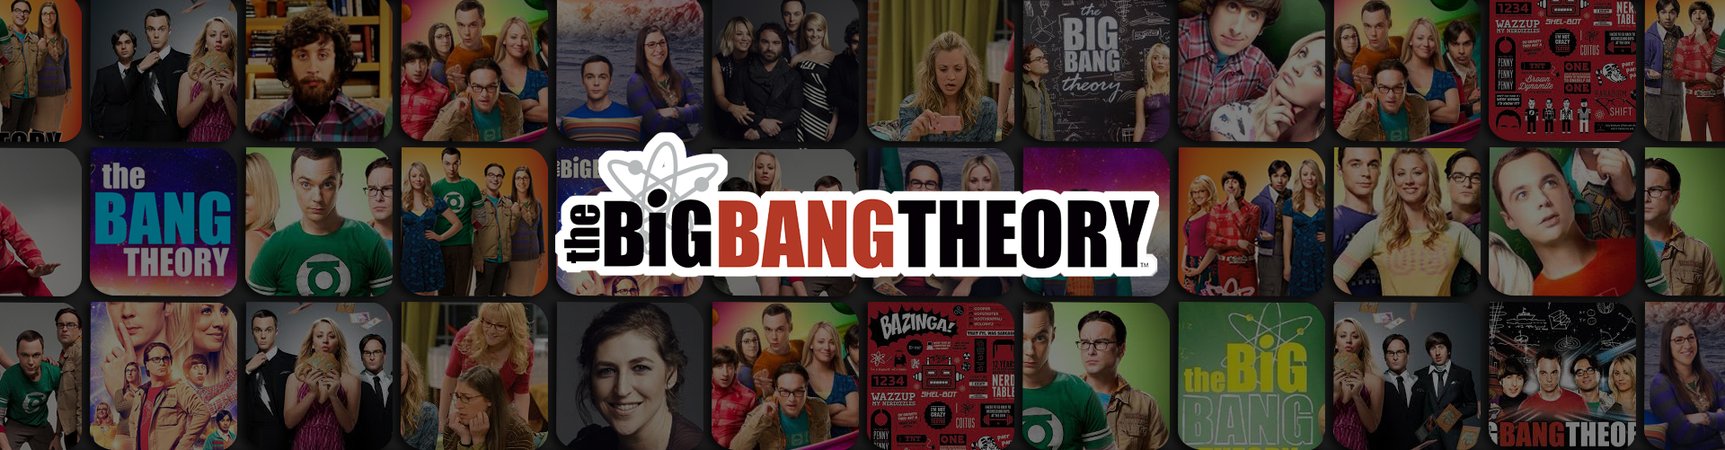 The Big Bang Theory Luggage Tag